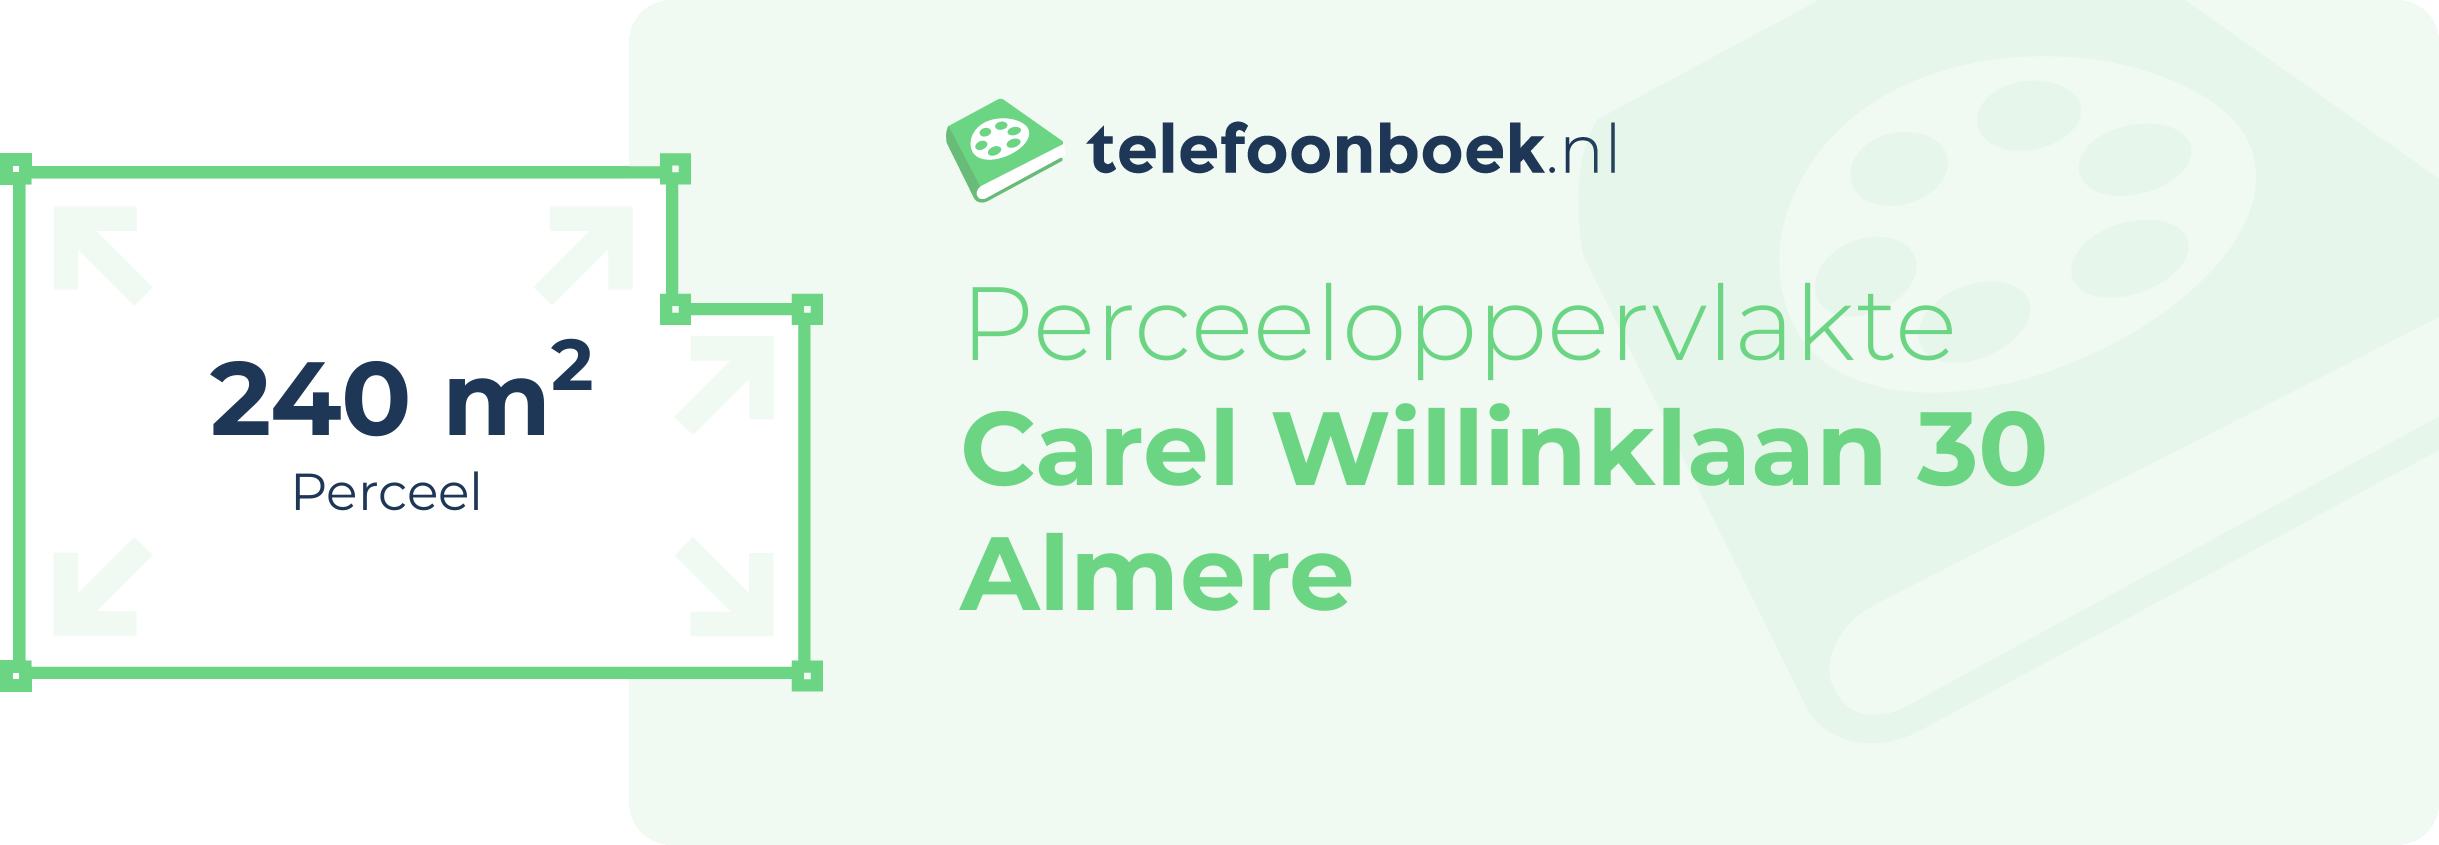 Perceeloppervlakte Carel Willinklaan 30 Almere